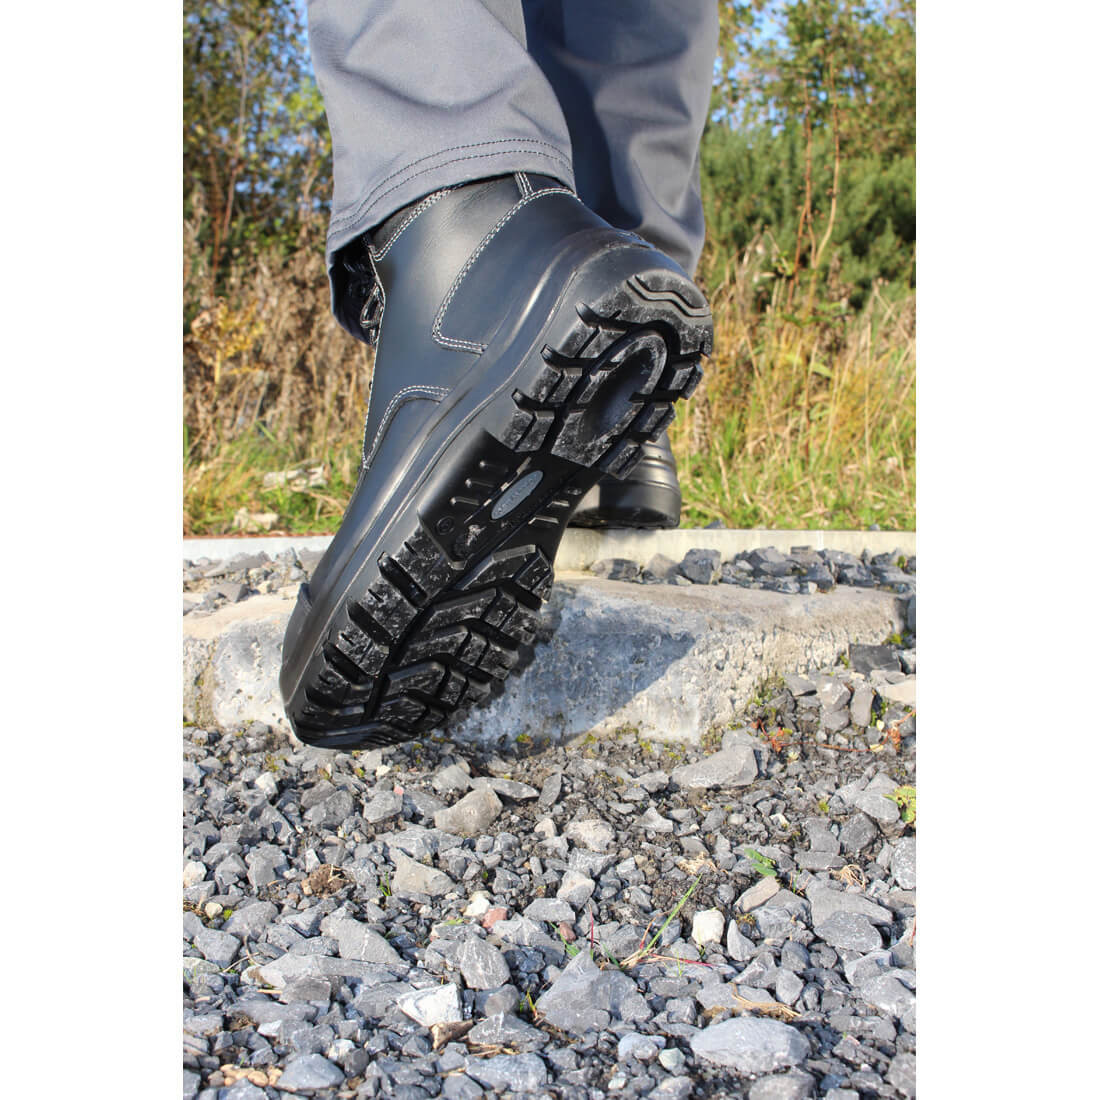 Brodequin Foyle S3 HRO CI HI FO SRC - Les chaussures de protection